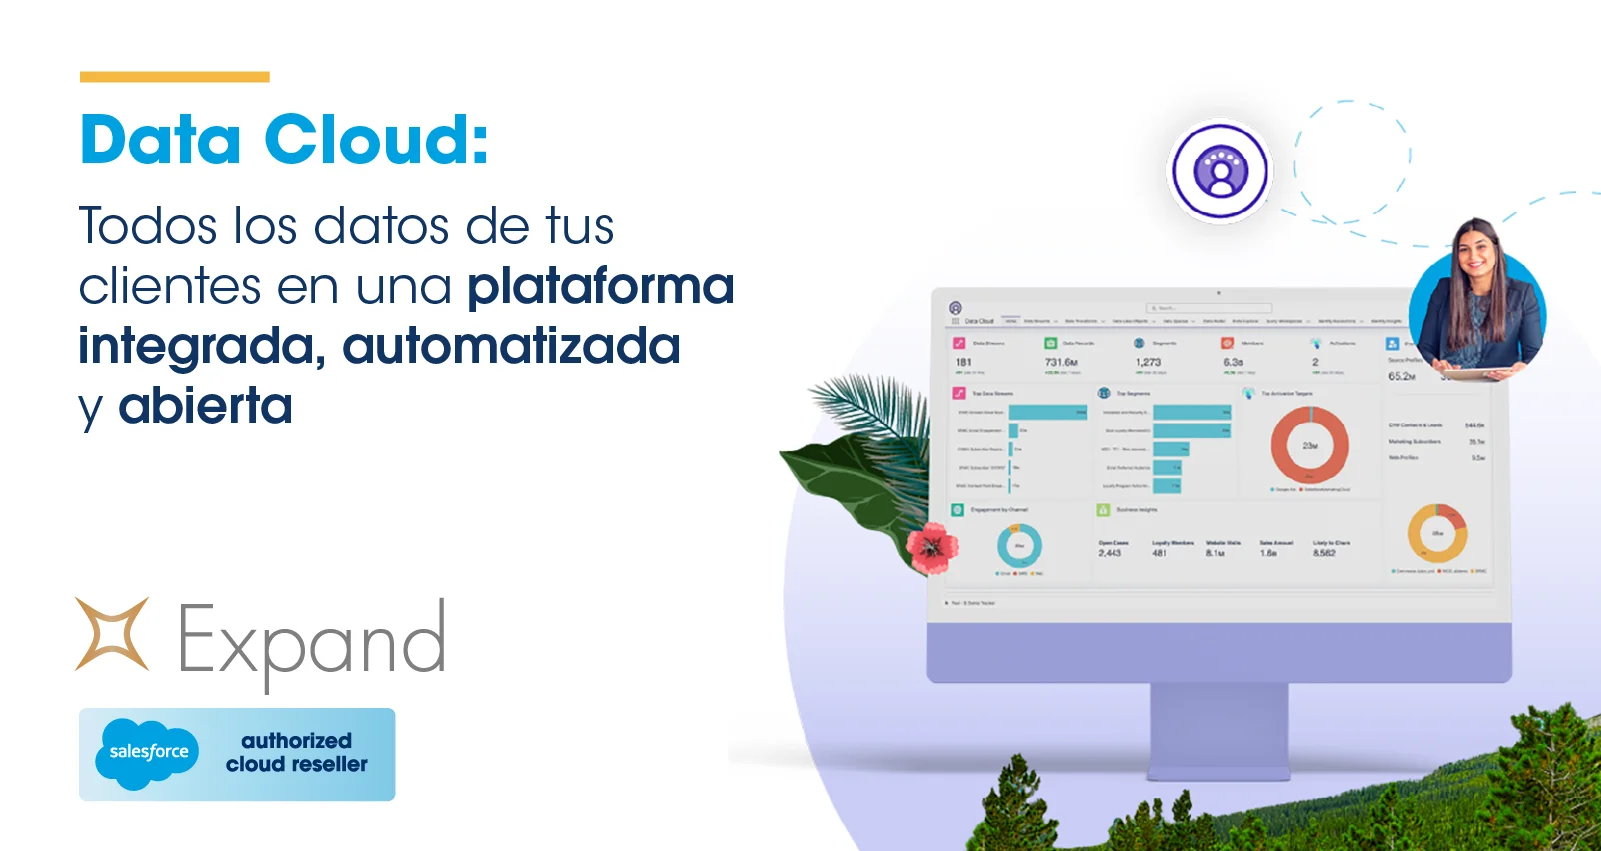 Data Cloud: Todos los datos de tus clientes en una plataforma integrada, automatizada y abierta